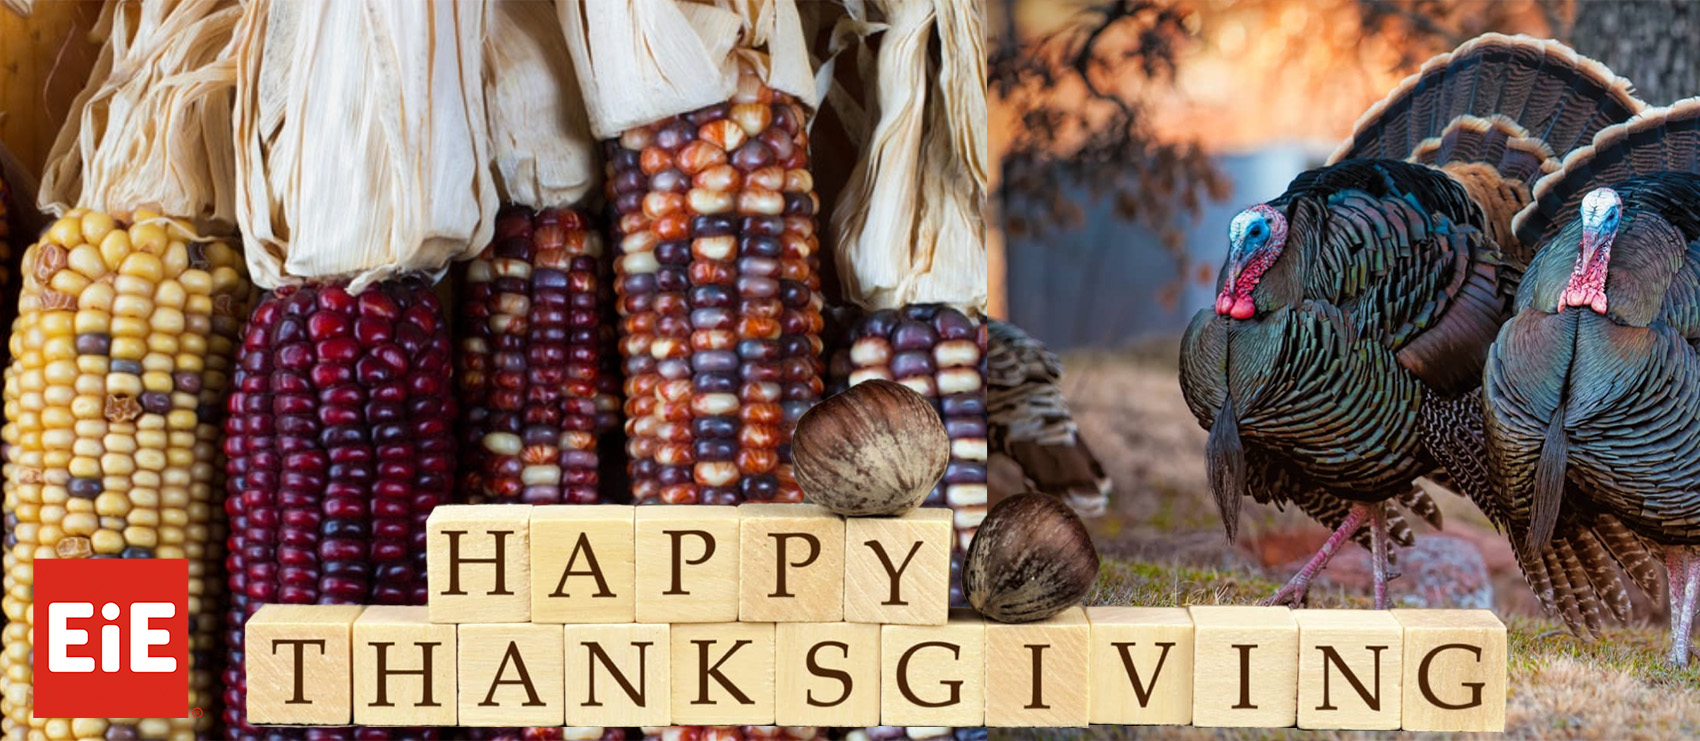 Thanksgiving Banner, EiE Branded: Corn, Turkeys, Blocks that Spell out Happy Thanksgiving